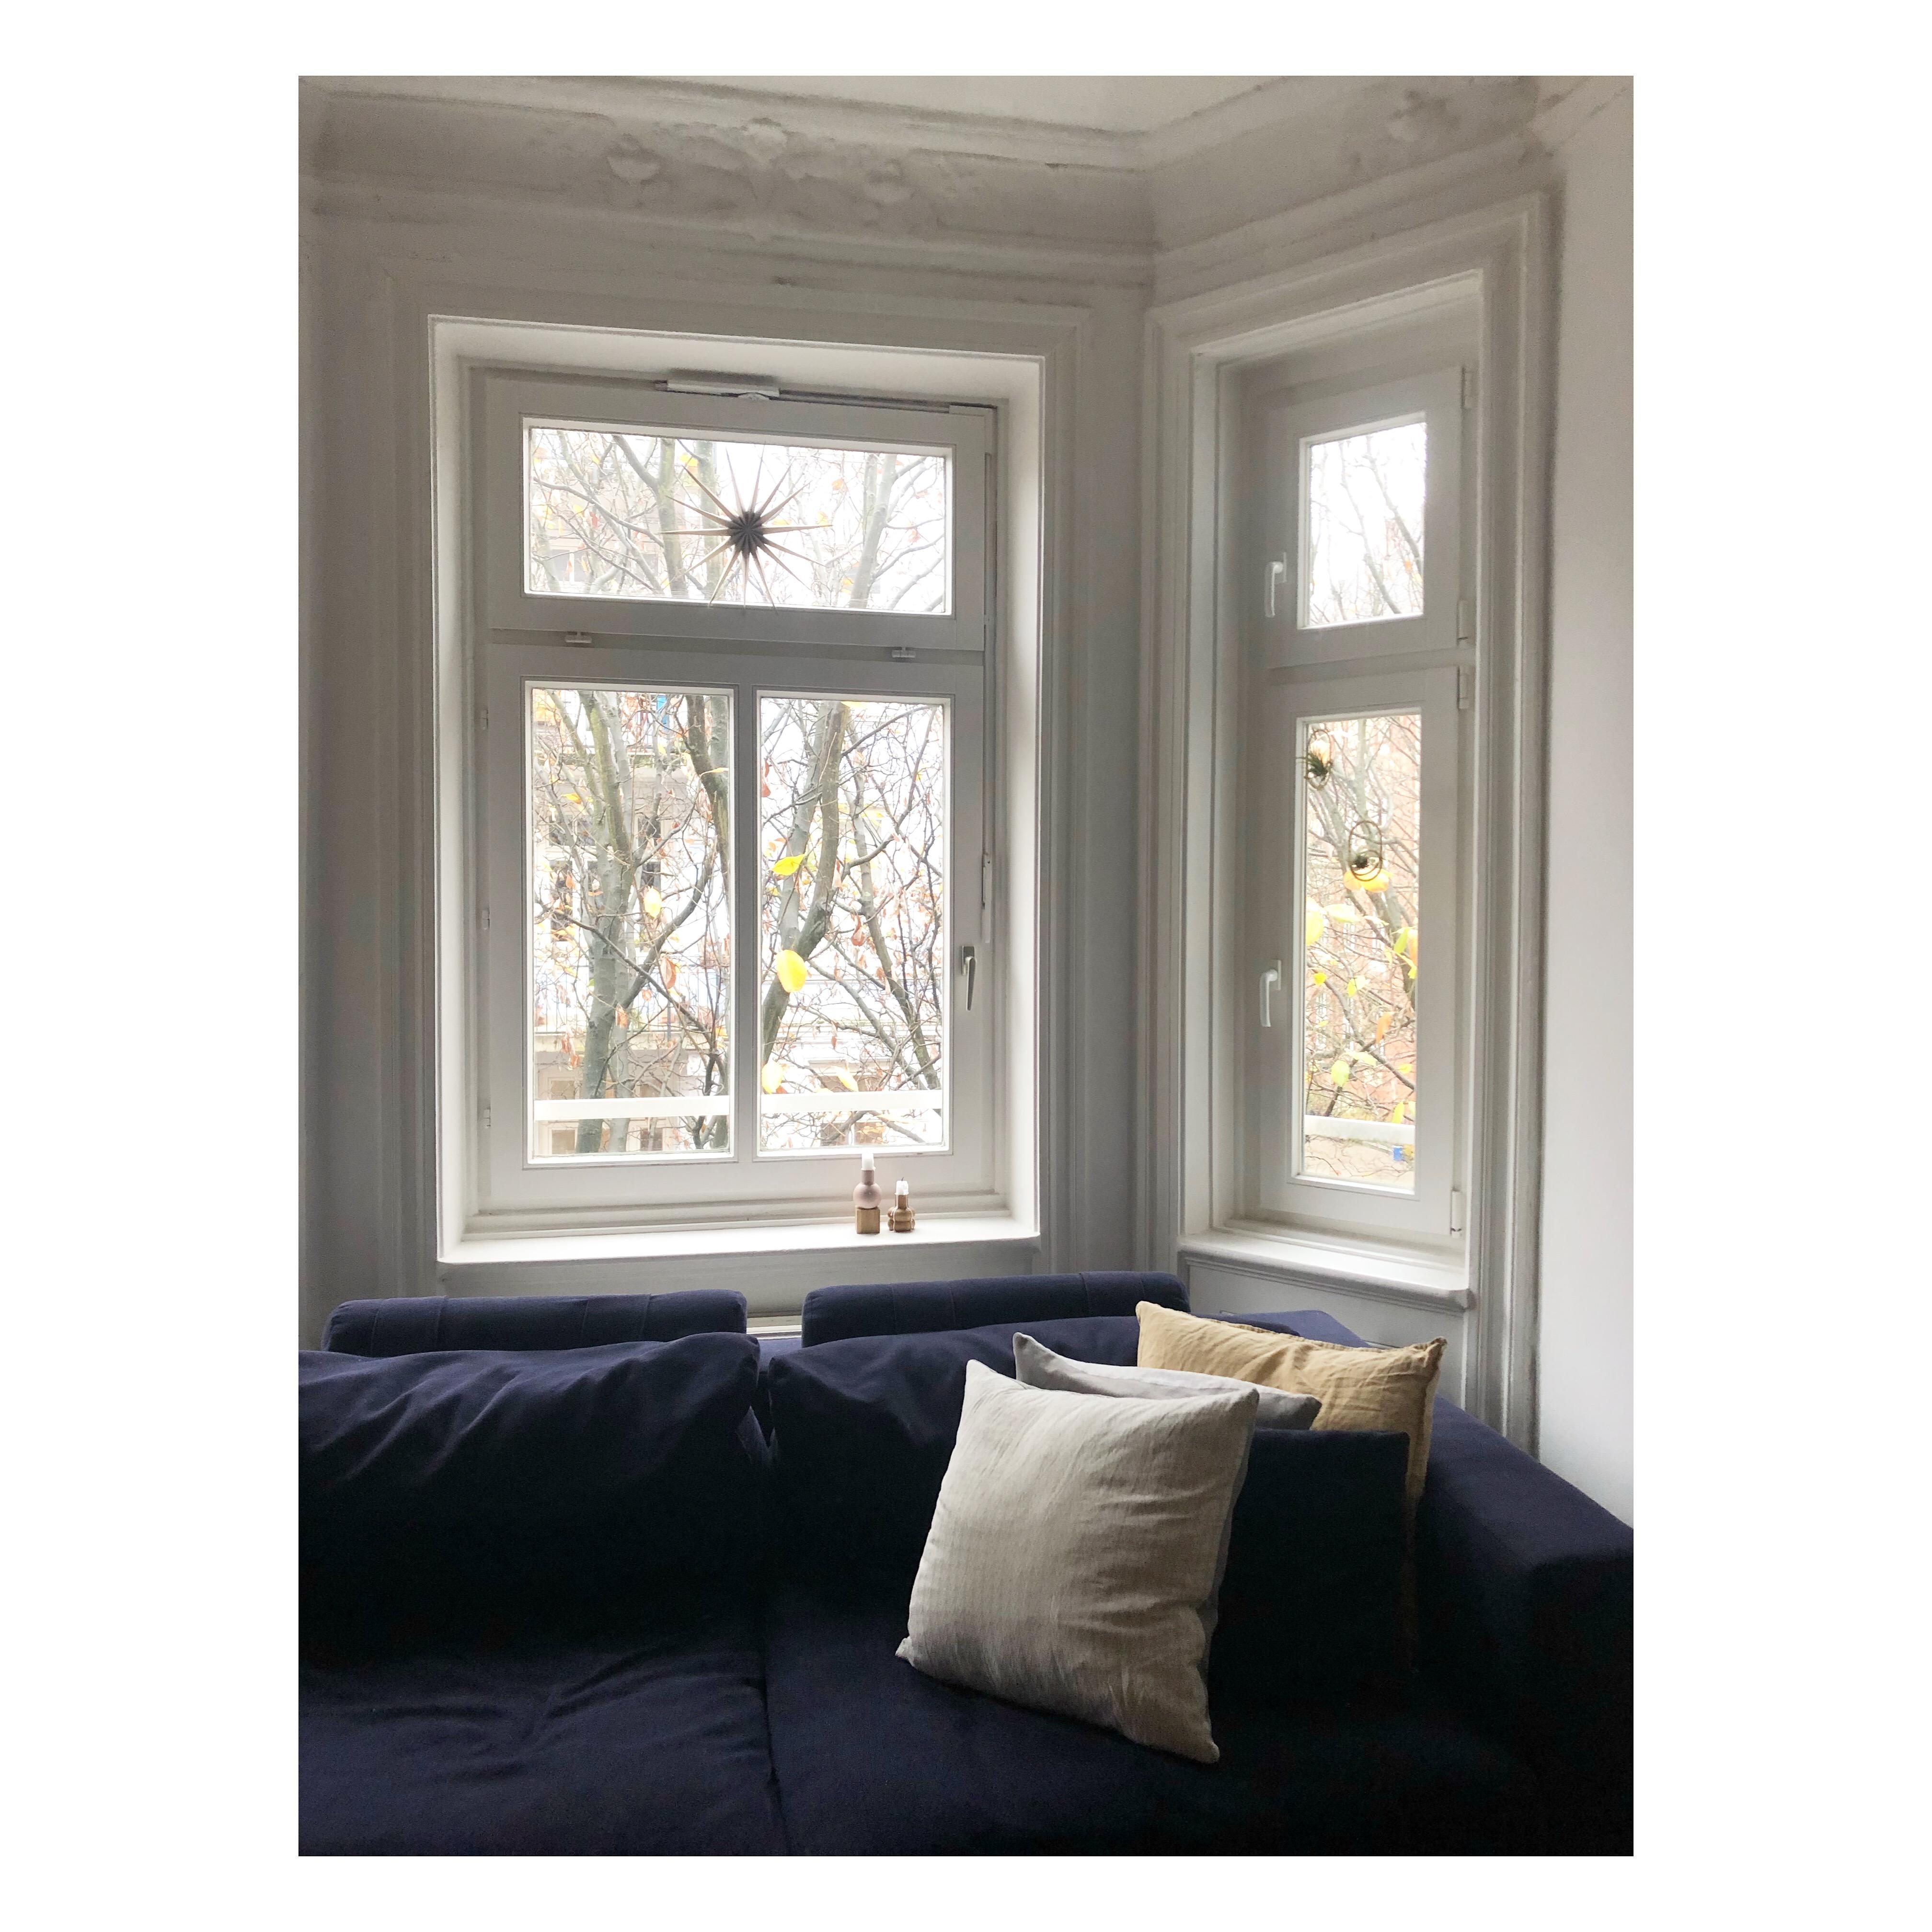 Cozy winter 
#interior
#altbauliebe